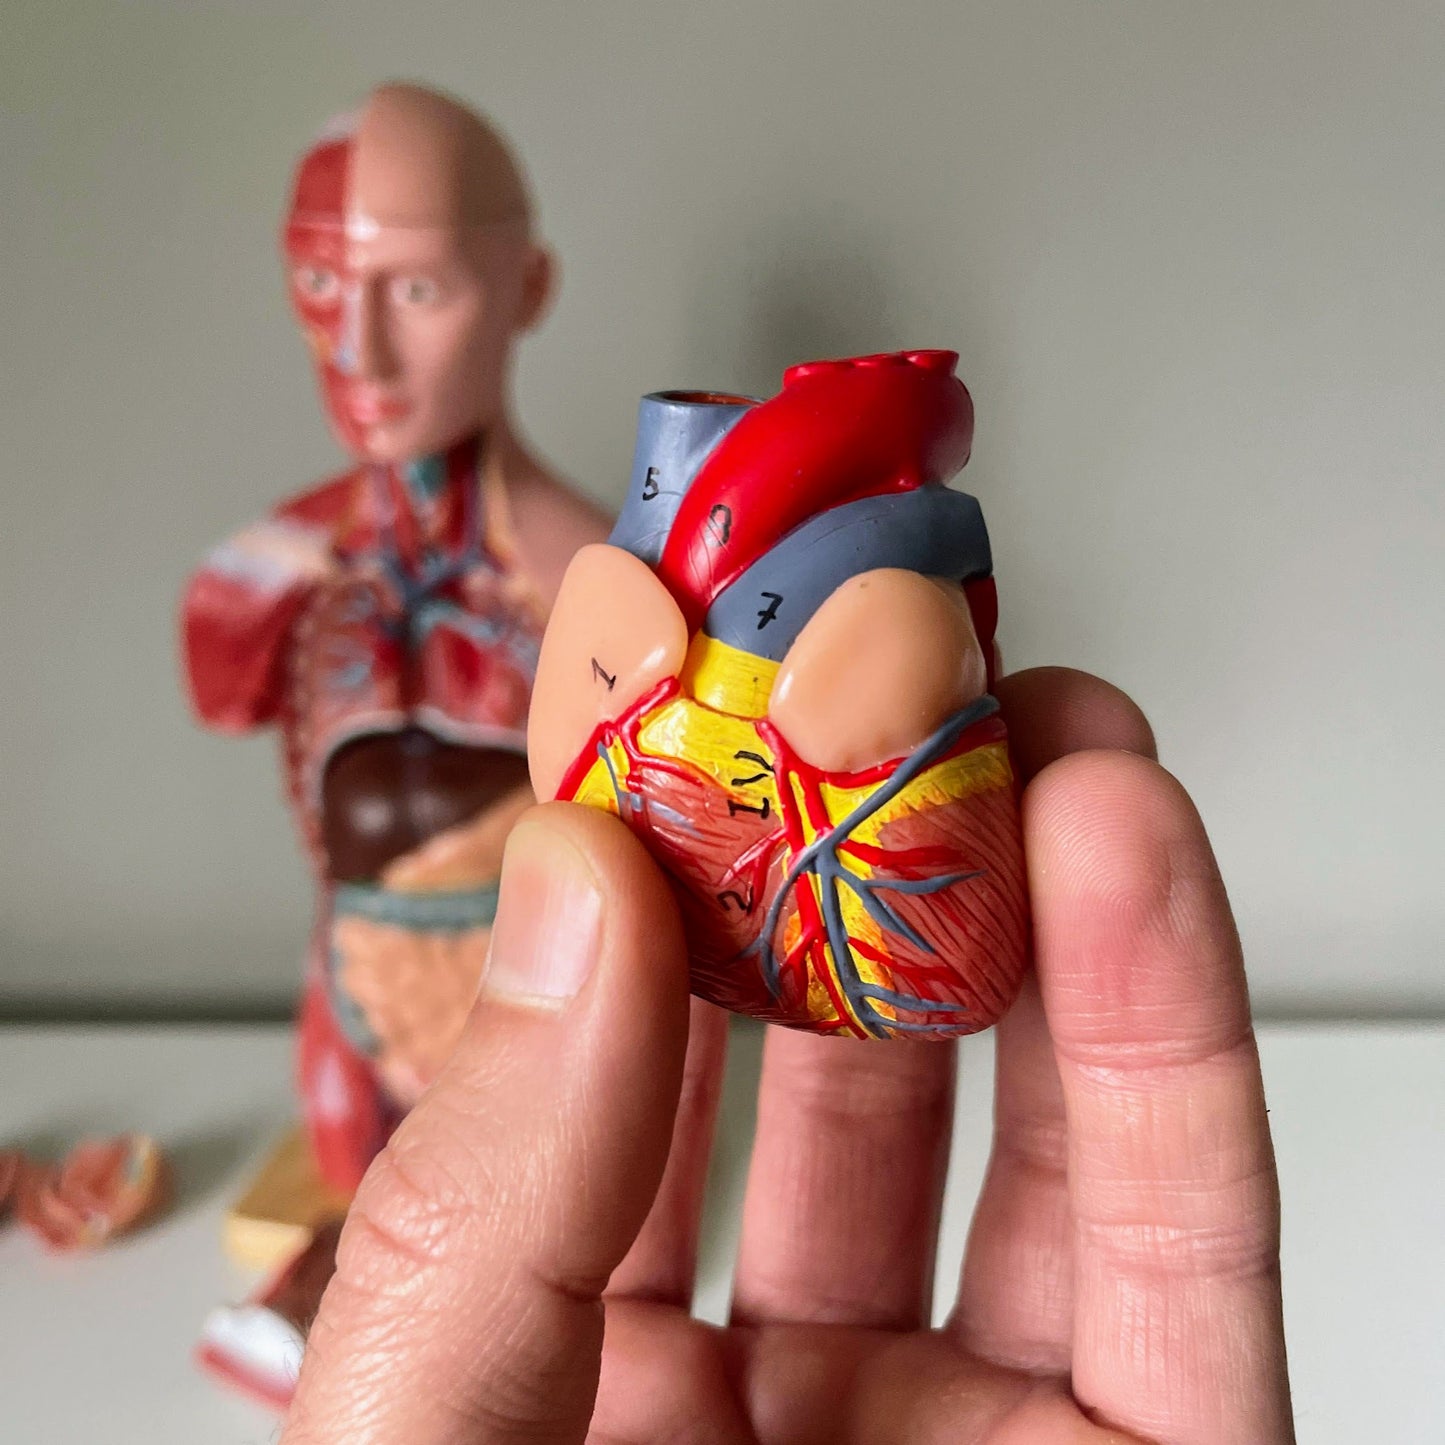 Anatomi model med muskulatur, begge køn og udtagelige organer